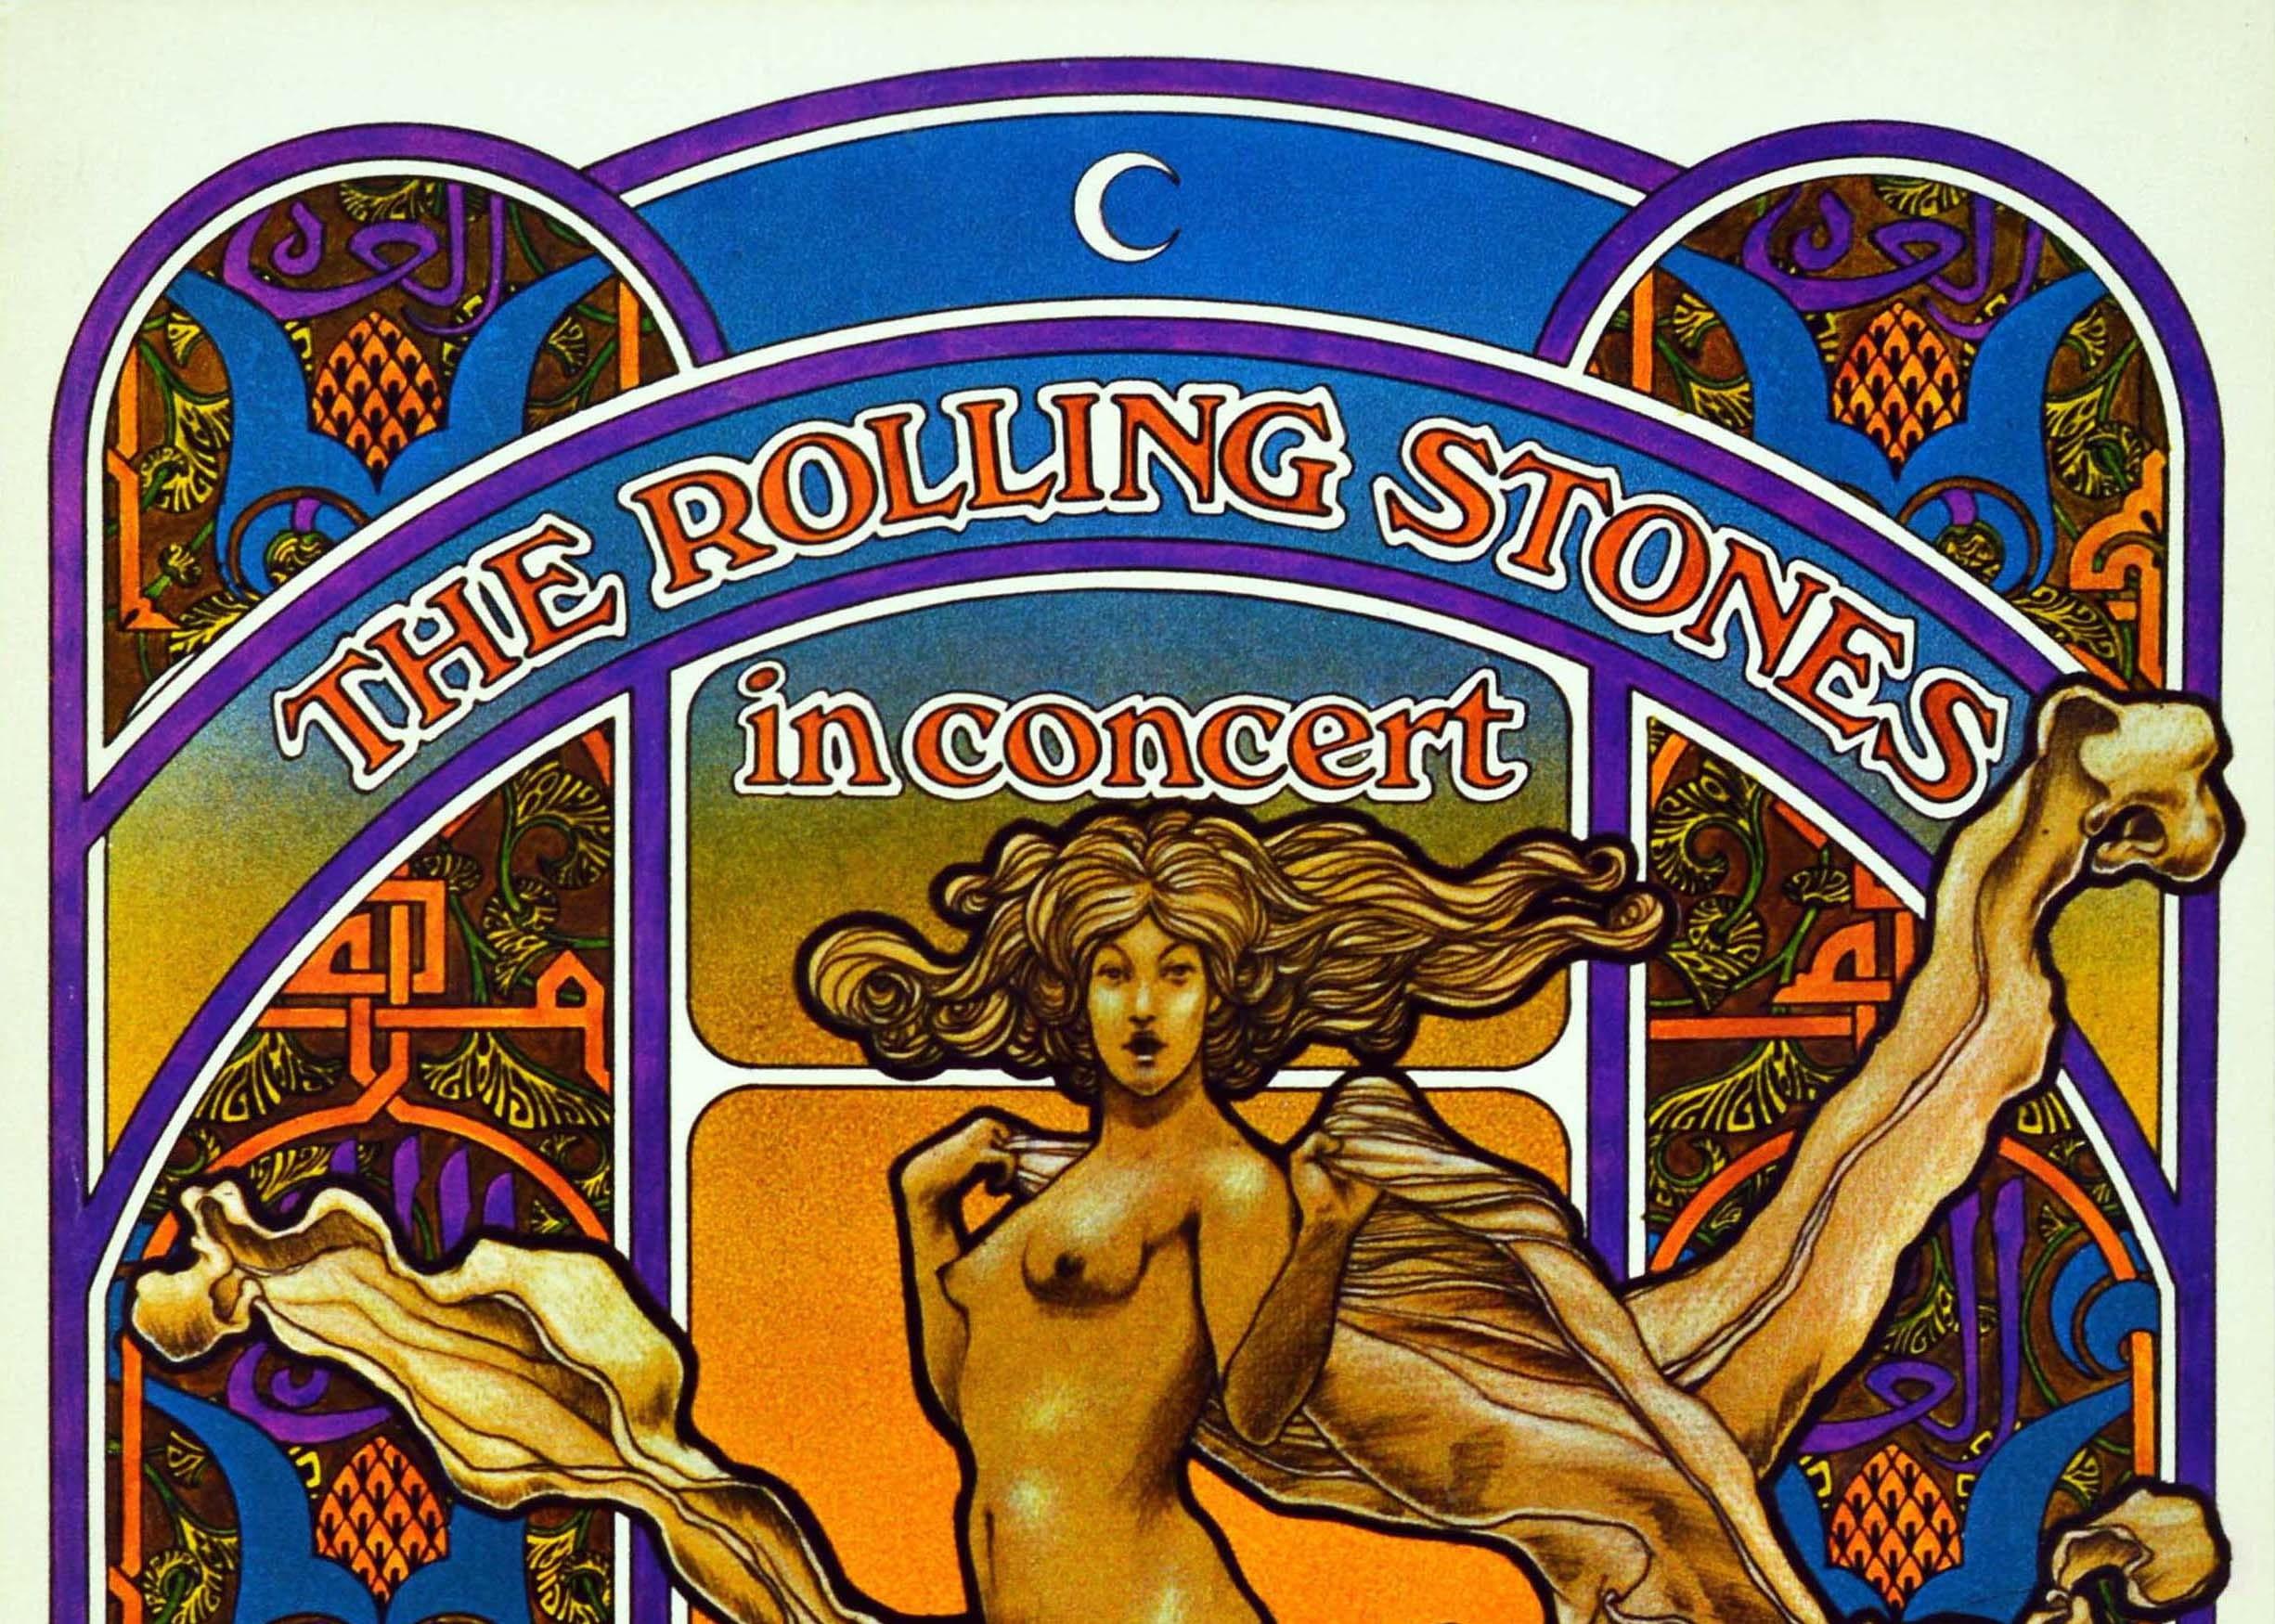 Affiche originale de la tournée mondiale 1969-1970 des Rolling Stones in Concert. L'image aux couleurs vives du célèbre graphiste américain David Edward Byrd (né en 1941) représente une figure de style Art nouveau aux cheveux flottants au centre,